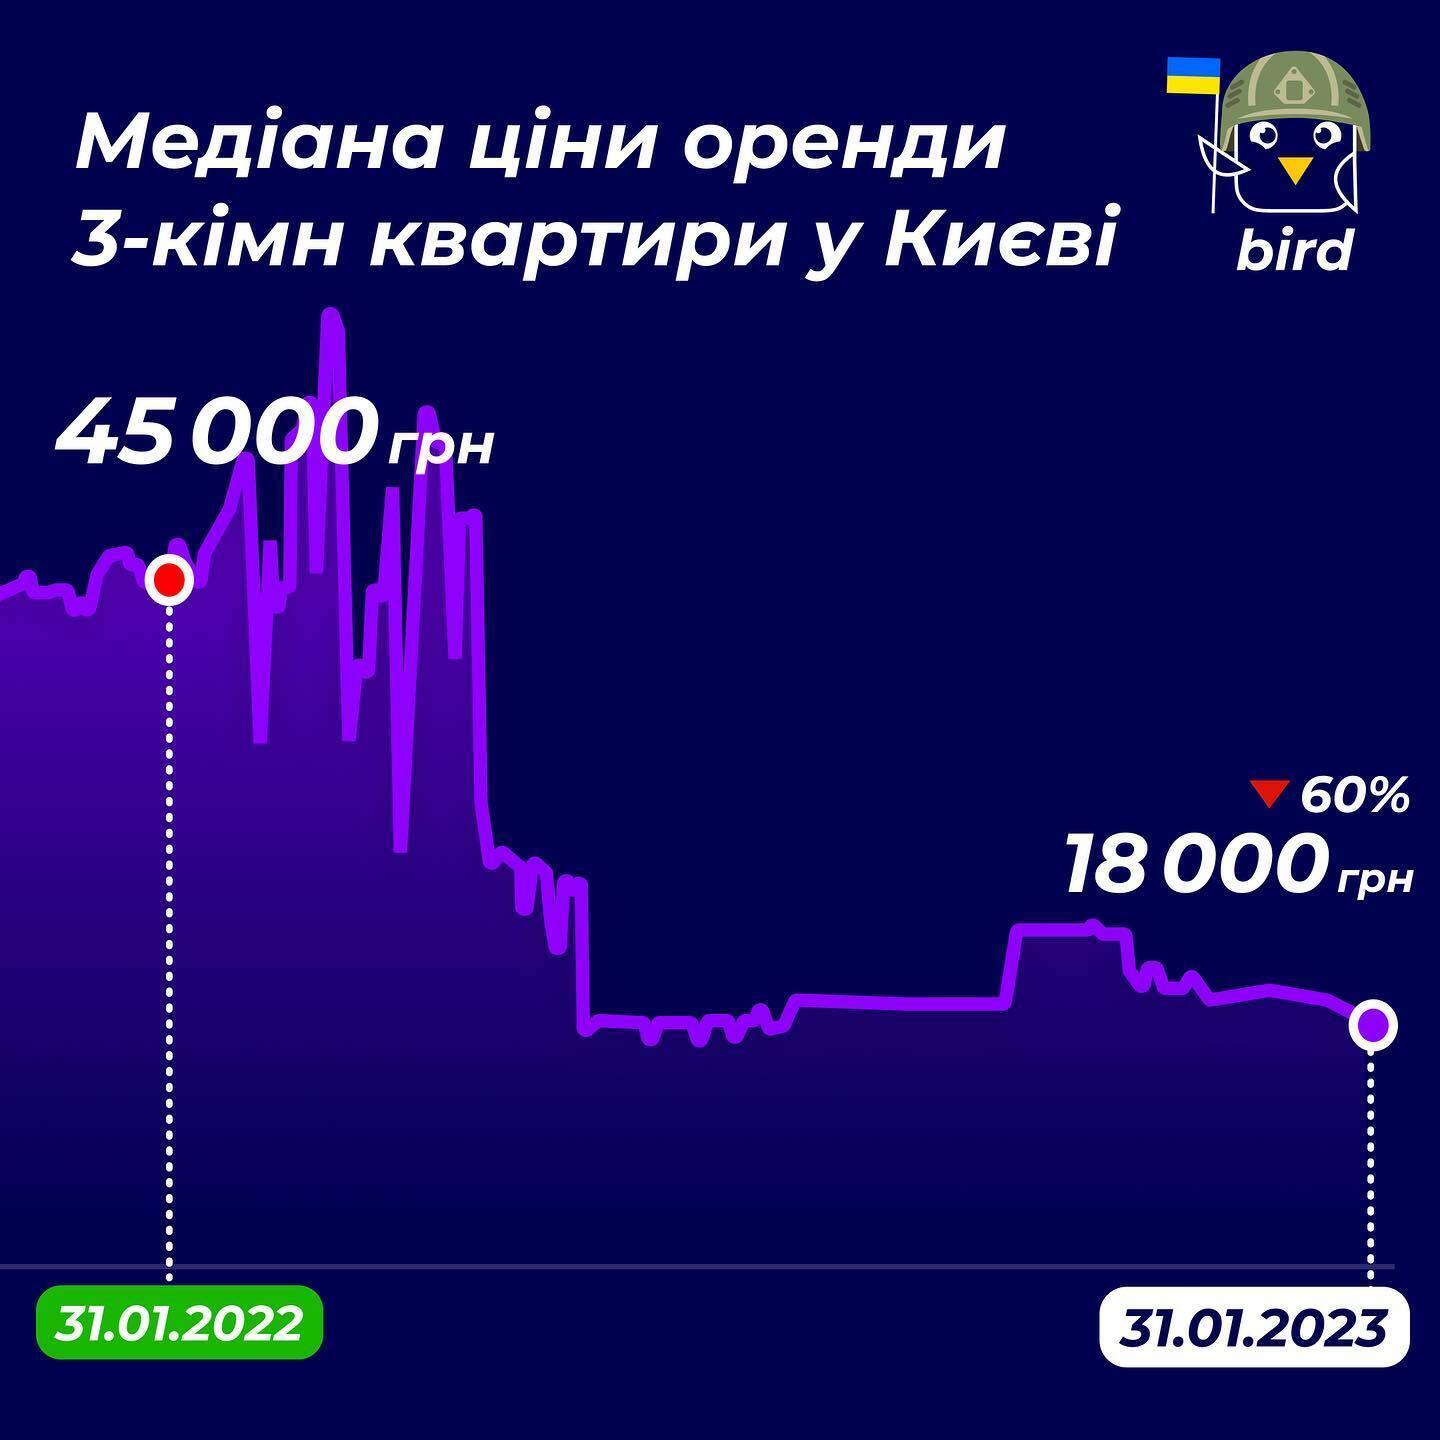 Аренда 3-комнатной квартиры во Львове обойдется в среднем в 19 000 грн, в Киеве же – 18 000 грн